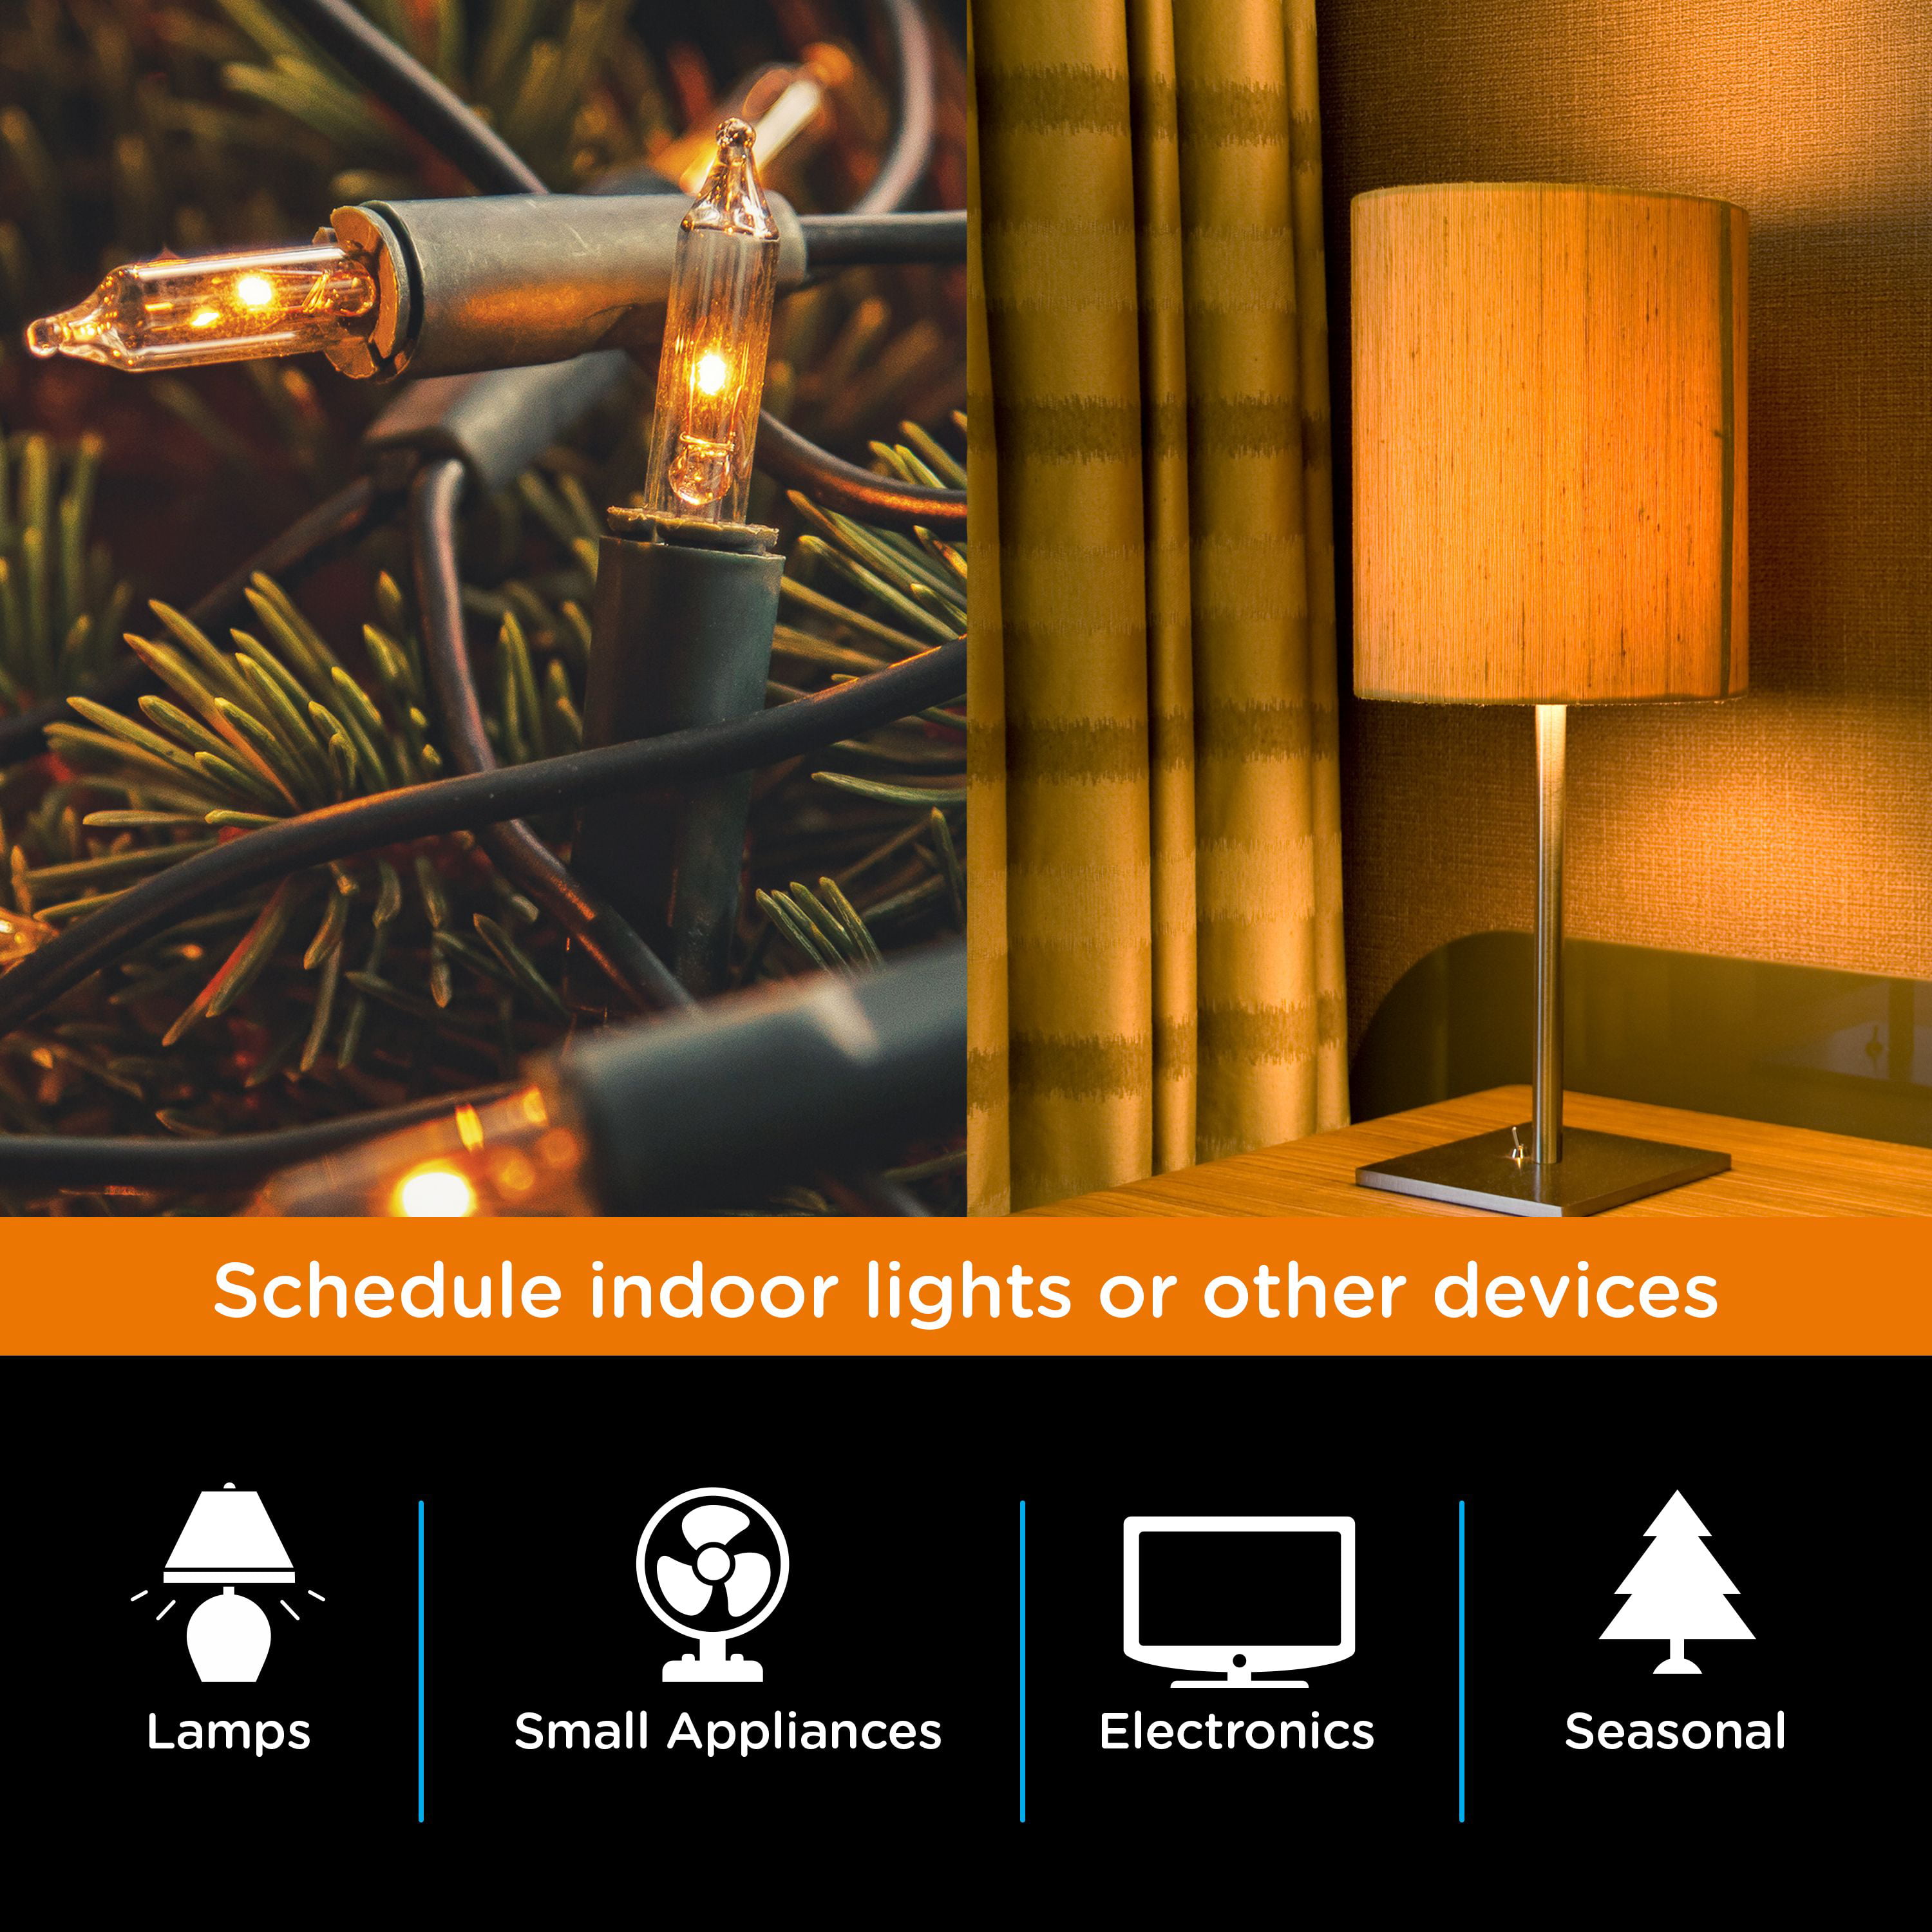 Outdoor-Indoor SunSmart 7-Day Plug-In Digital Timer